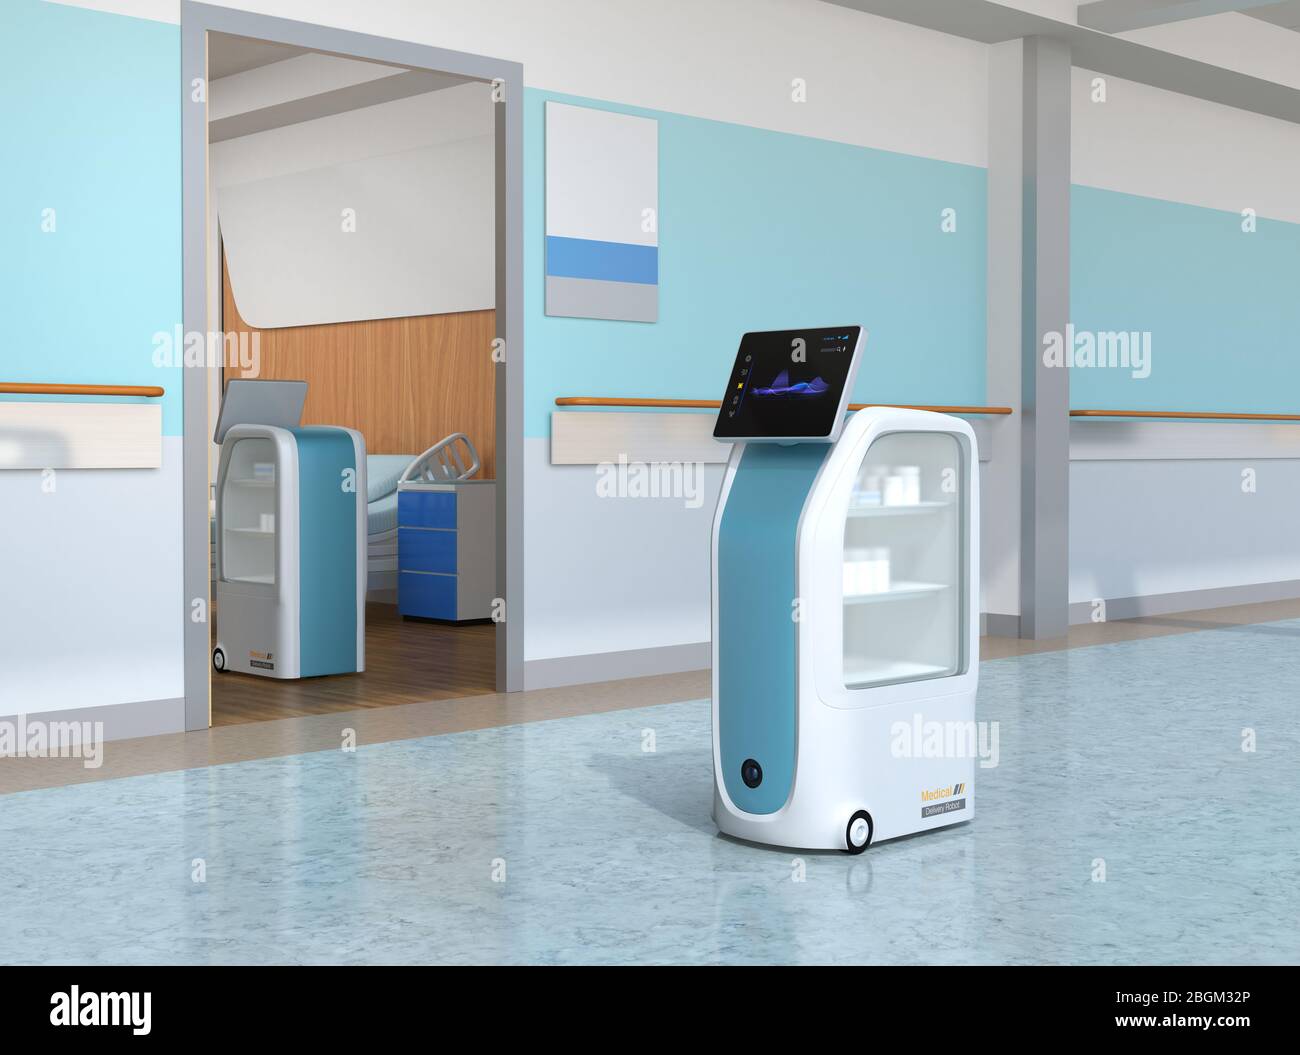 Robots de livraison médicale travaillant à l'hôpital. Concept de prévention des infections. Image de rendu 3D. Banque D'Images